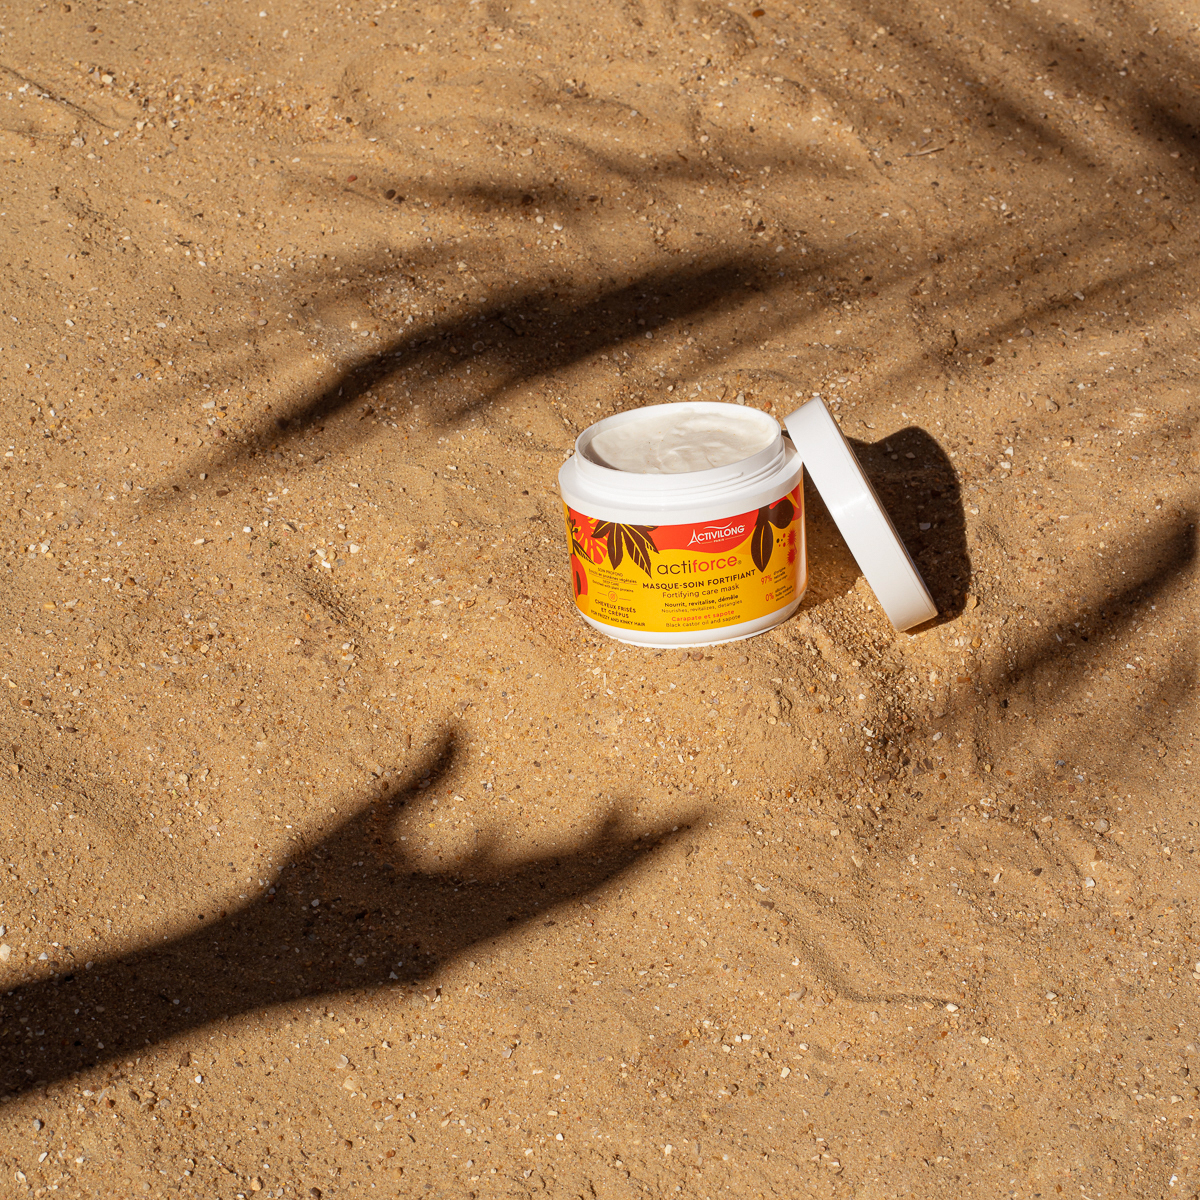 Produit capillaire posé sur le sable entre l'ombre d'un palmier et d'une main tendue